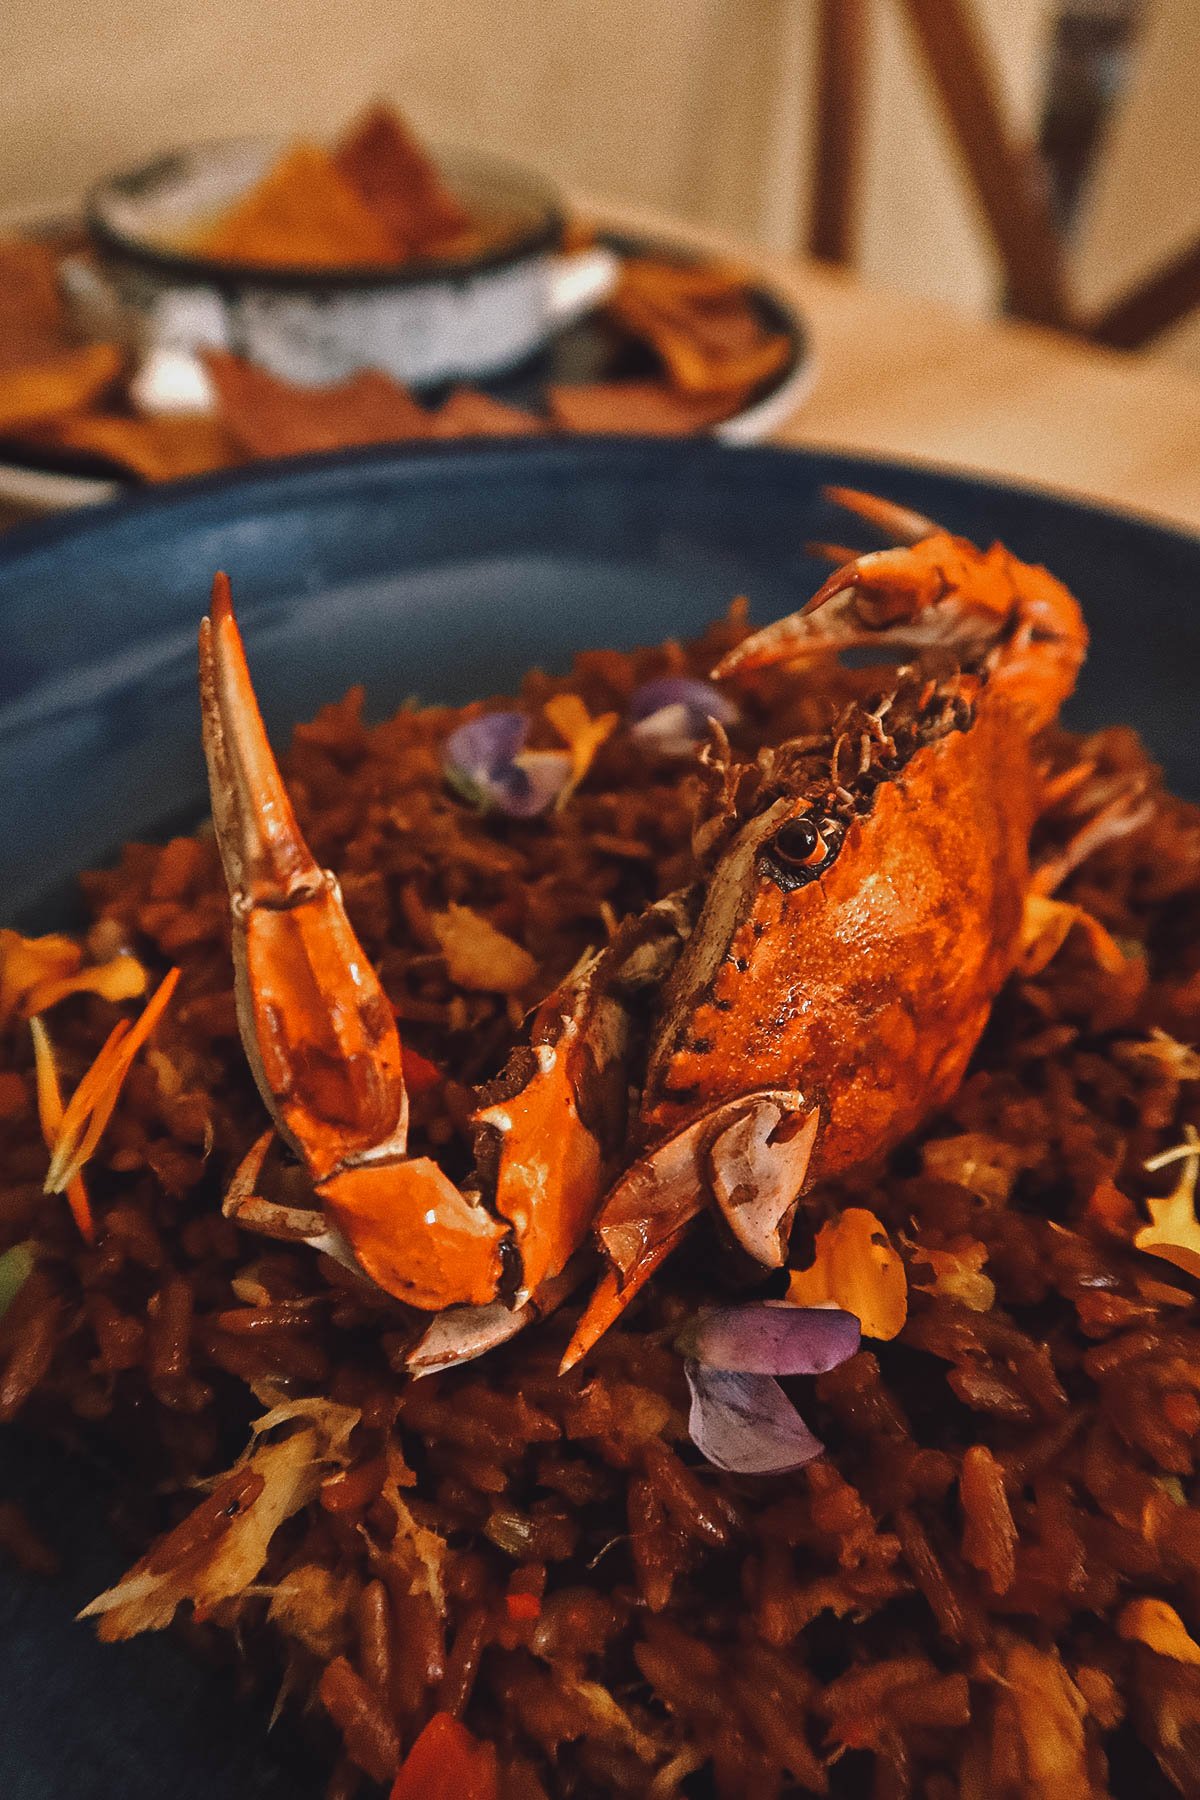 Crab rice dish at Sierpe restaurant in Cartagena